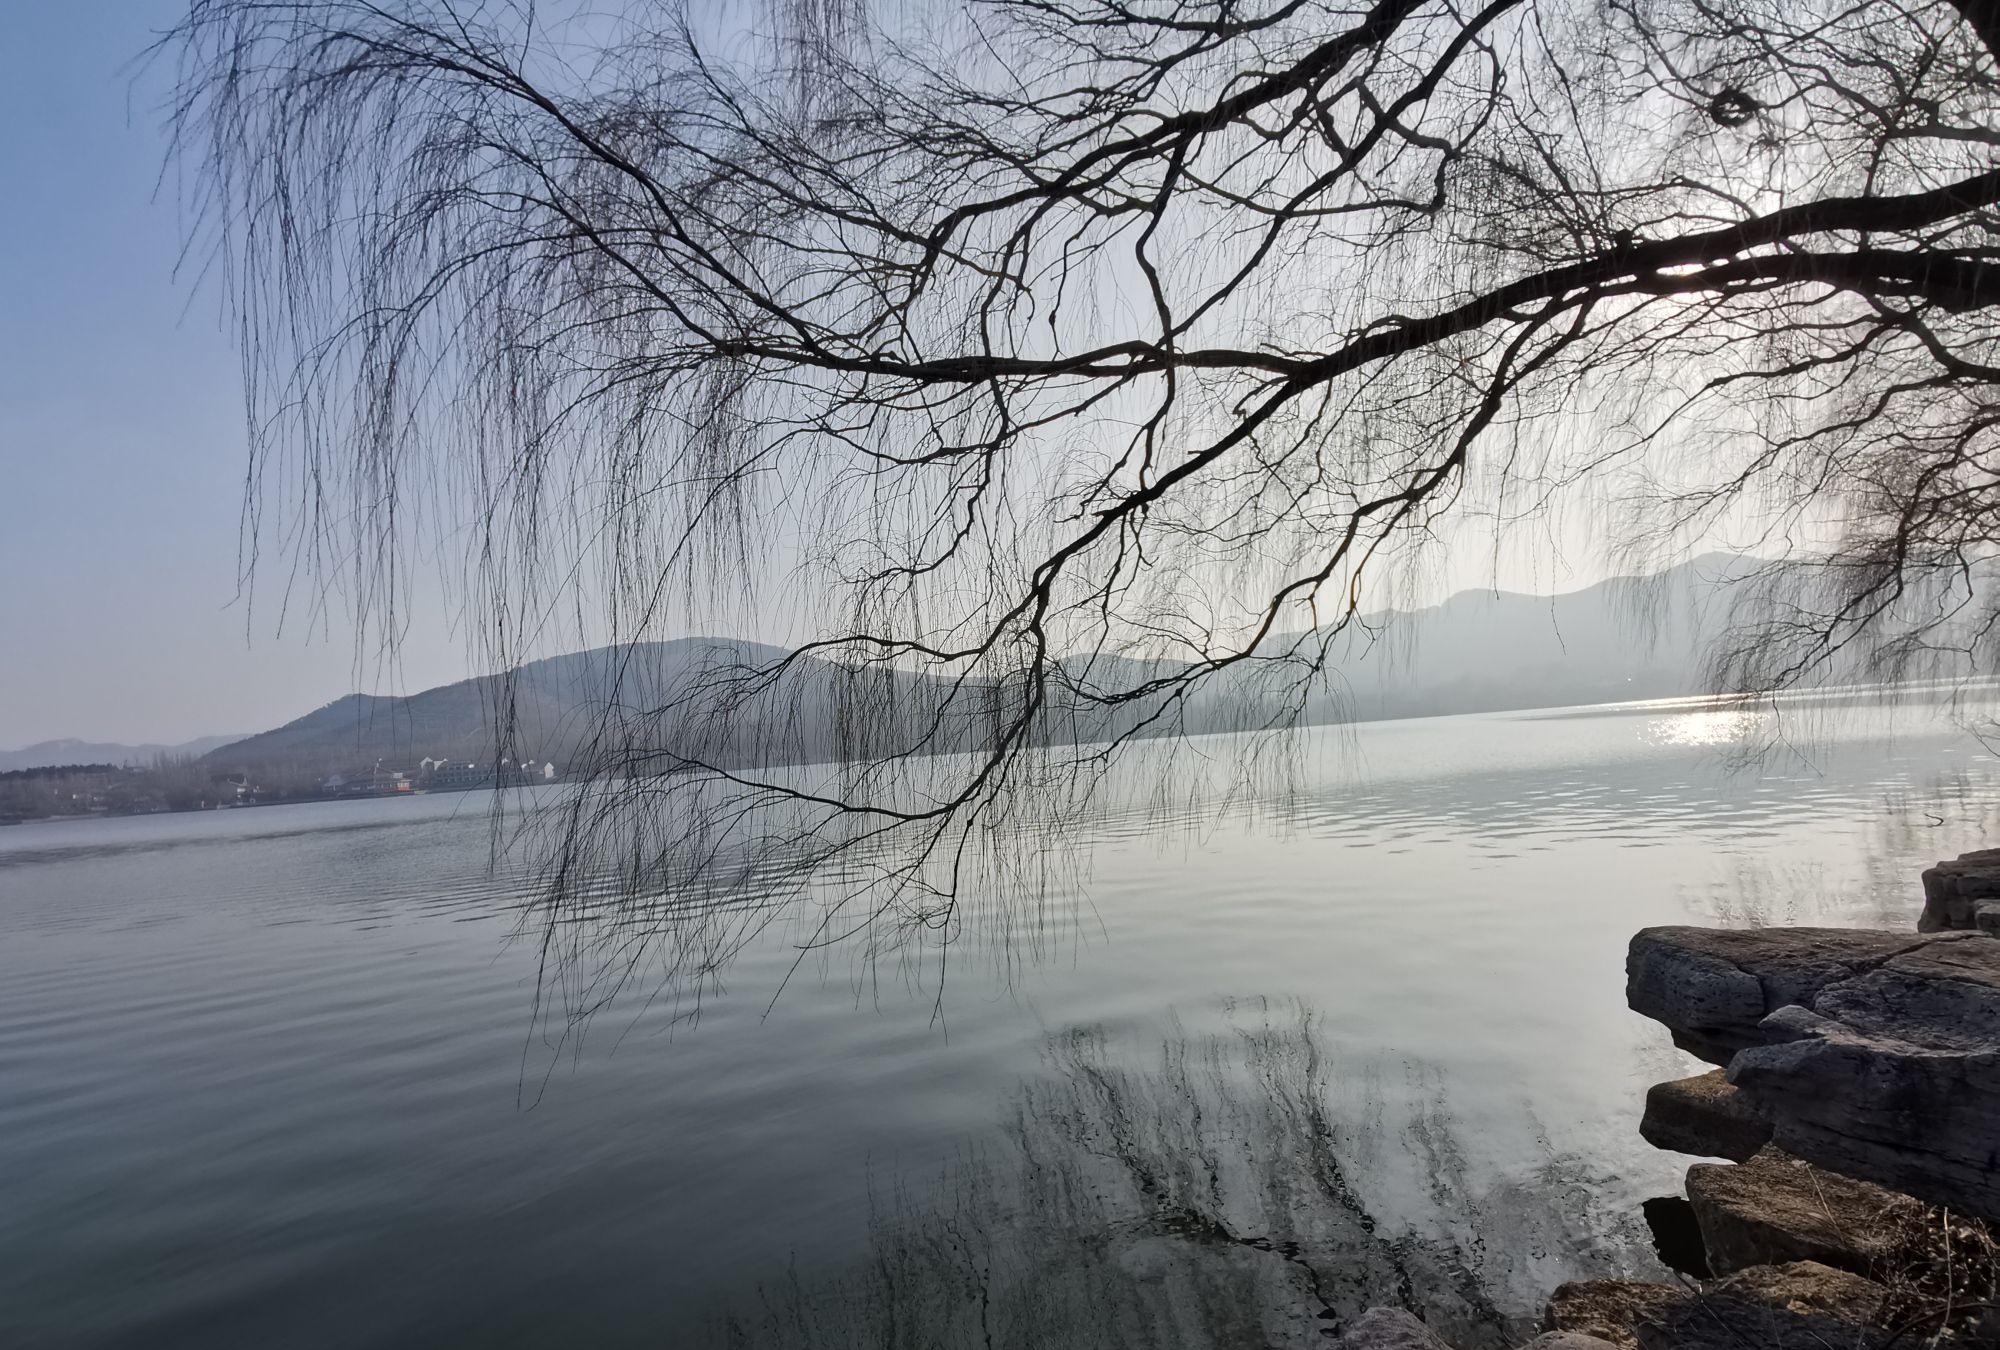 博山石马的五阳湖 垂柳依依 亭台楼阁 山水一色 堪比西湖